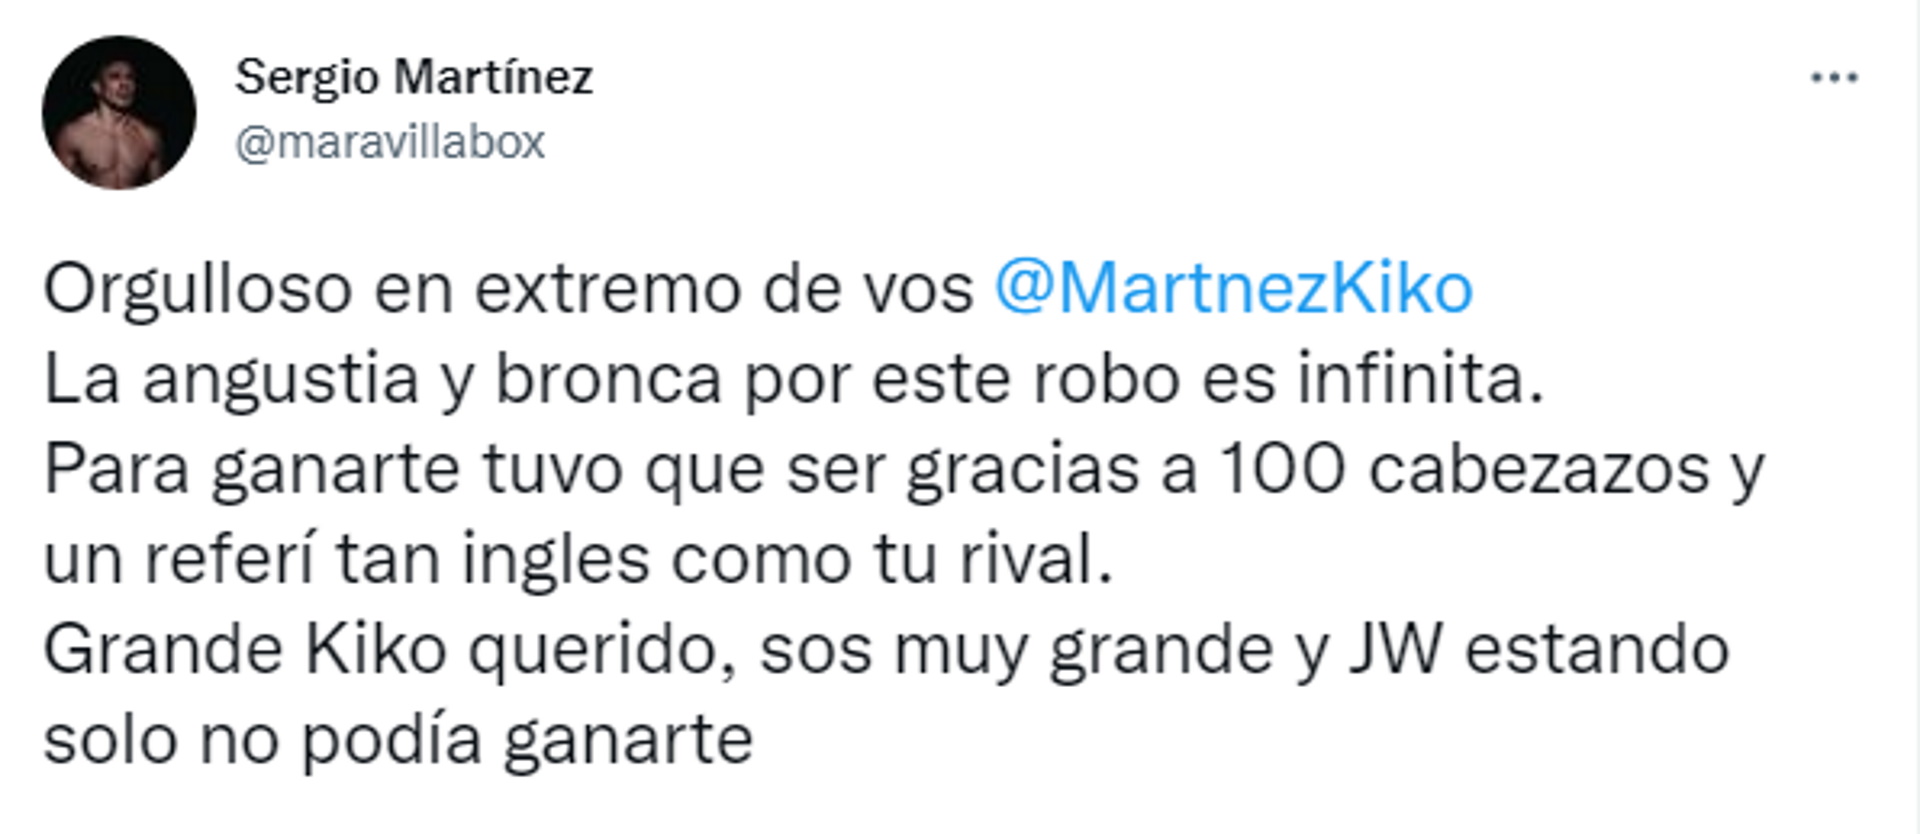 Maravilla Martínez cargó contra el árbitro inglés y lo acusó de perjudicar a Kiko Martínez